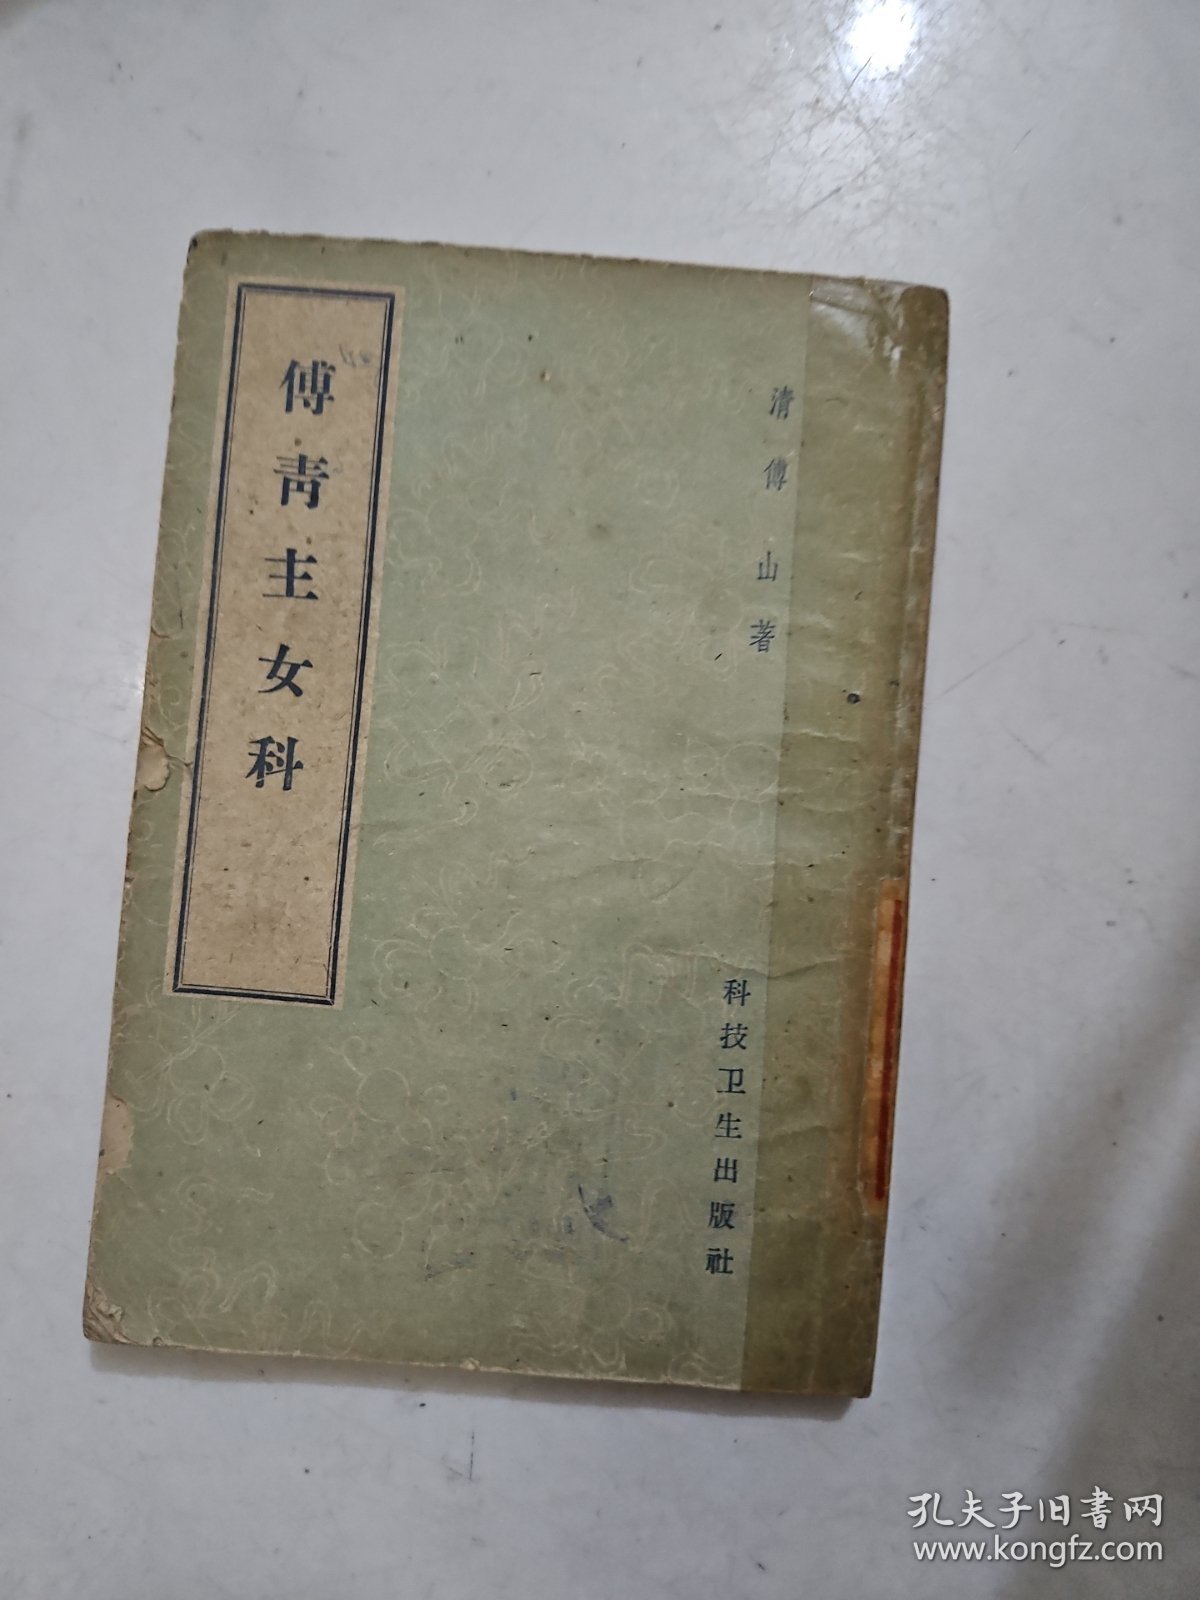 傅青主女科 科技卫生出版社1959